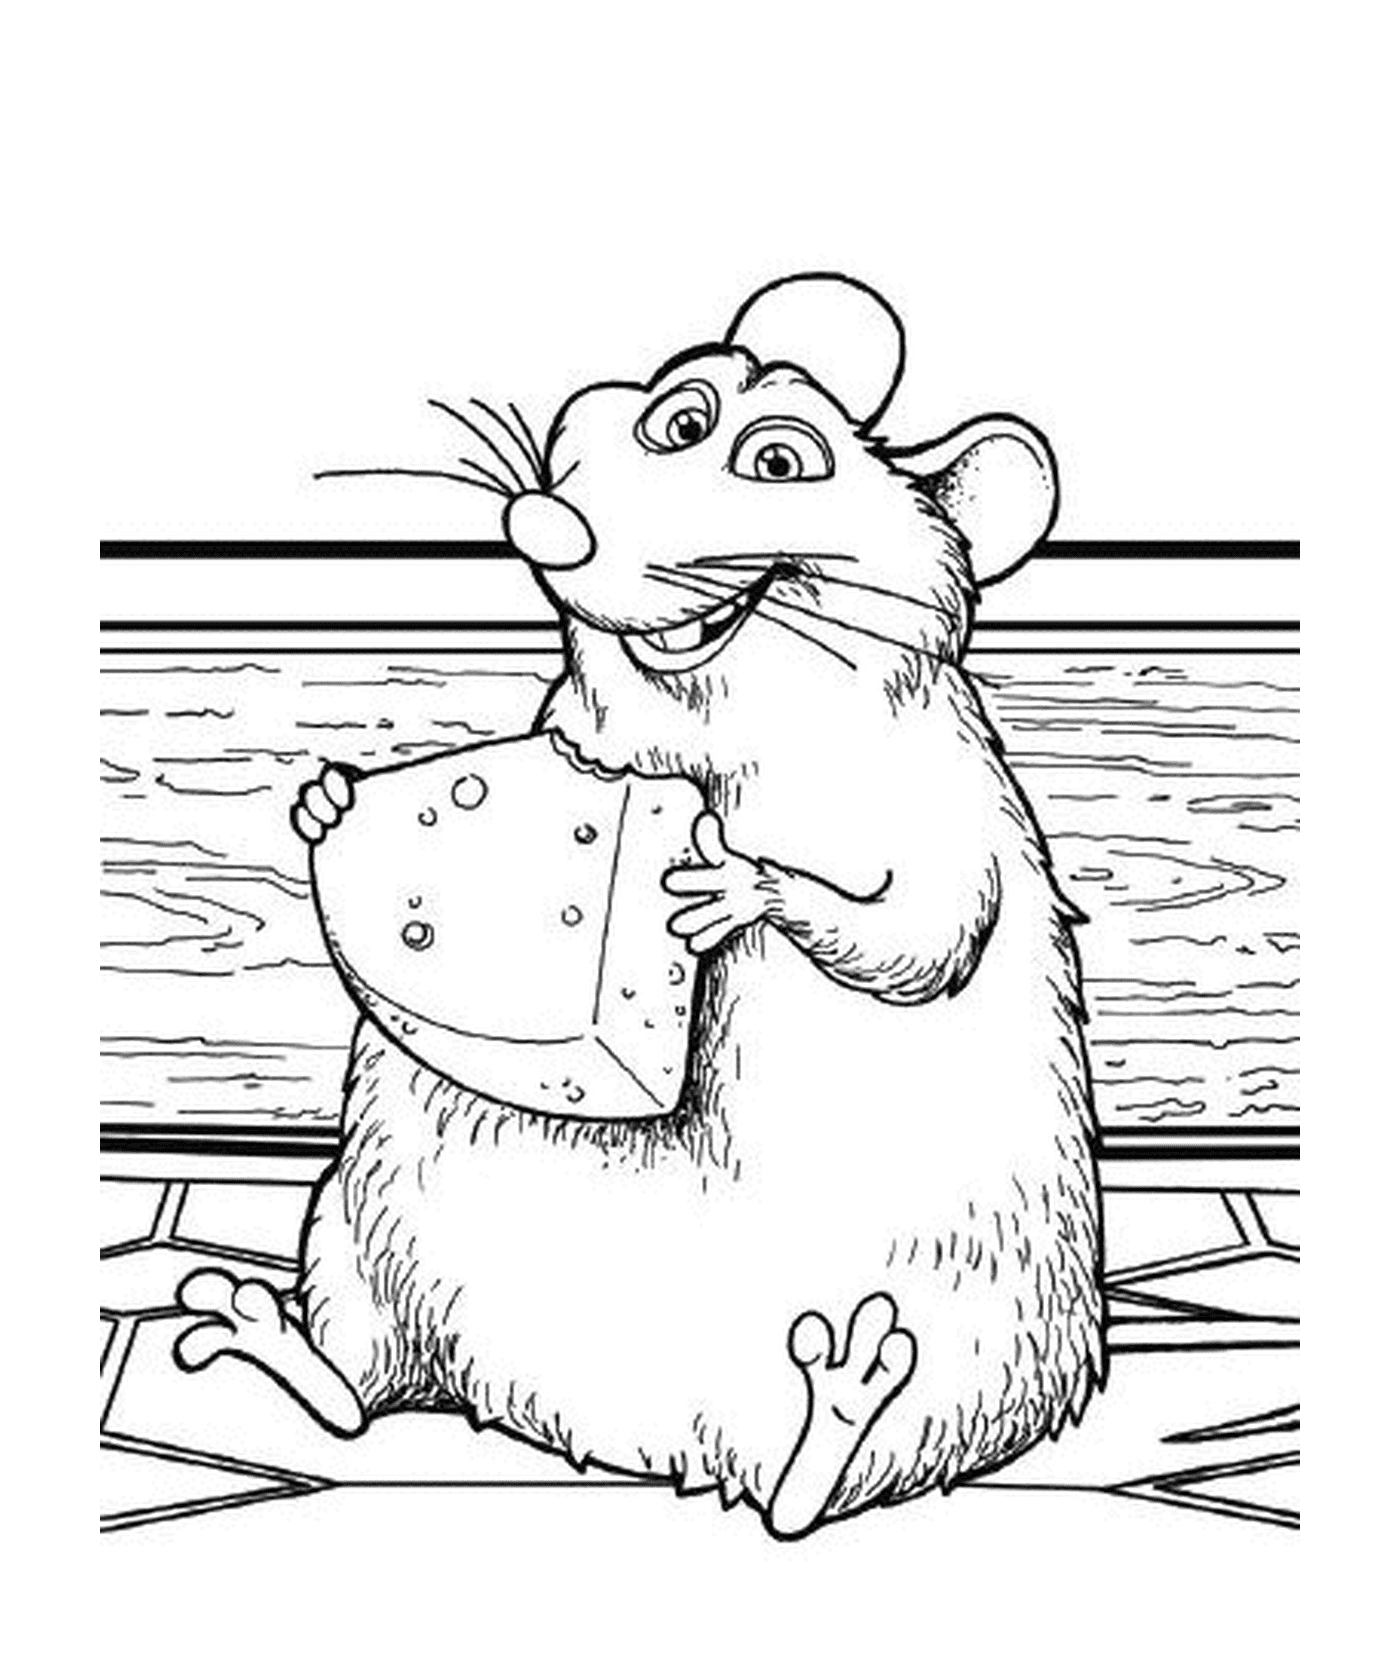  Ratatouille: eine Maus, die Käse im Mund hält 